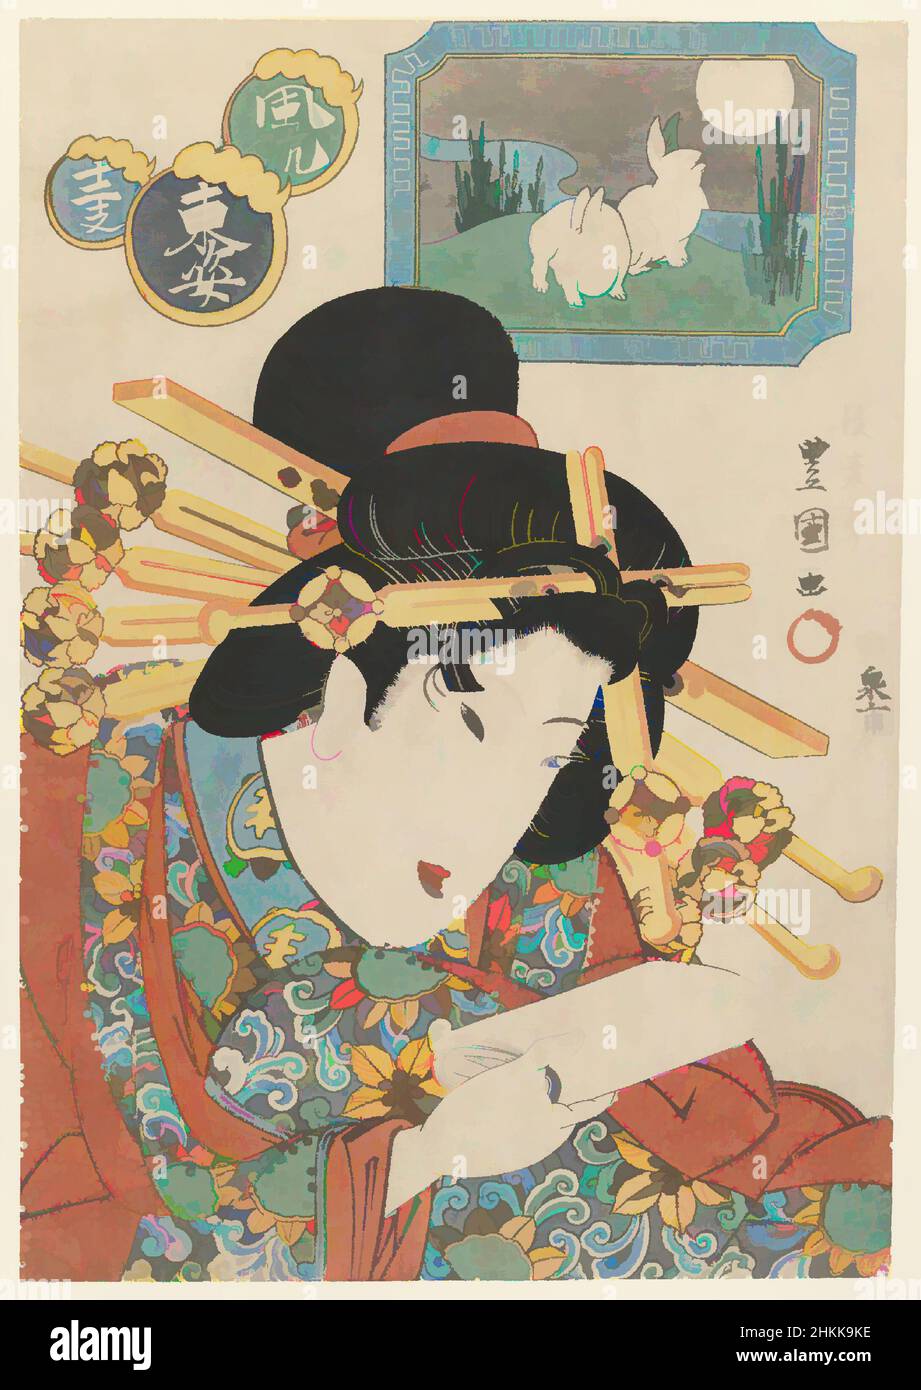 Art inspiré par Hare, de la série des douze formes de la mode Zodiac de l'est, Gosotei Toyokuni II, japonais, 1802-1835, imprimé en bois de couleur sur papier, Japon, fin 1820s, période Edo, 14 1/8 x 9 5/8 po, 35,9 x 24,4 cm, Bijin, Bijinga, période Edo, Geisha, Hairstyle, Japan, Classic œuvres modernisées par Artotop avec un peu de modernité. Formes, couleur et valeur, impact visuel accrocheur sur l'art émotions par la liberté d'œuvres d'art d'une manière contemporaine. Un message intemporel qui cherche une nouvelle direction créative. Artistes qui se tournent vers le support numérique et créent le NFT Artotop Banque D'Images